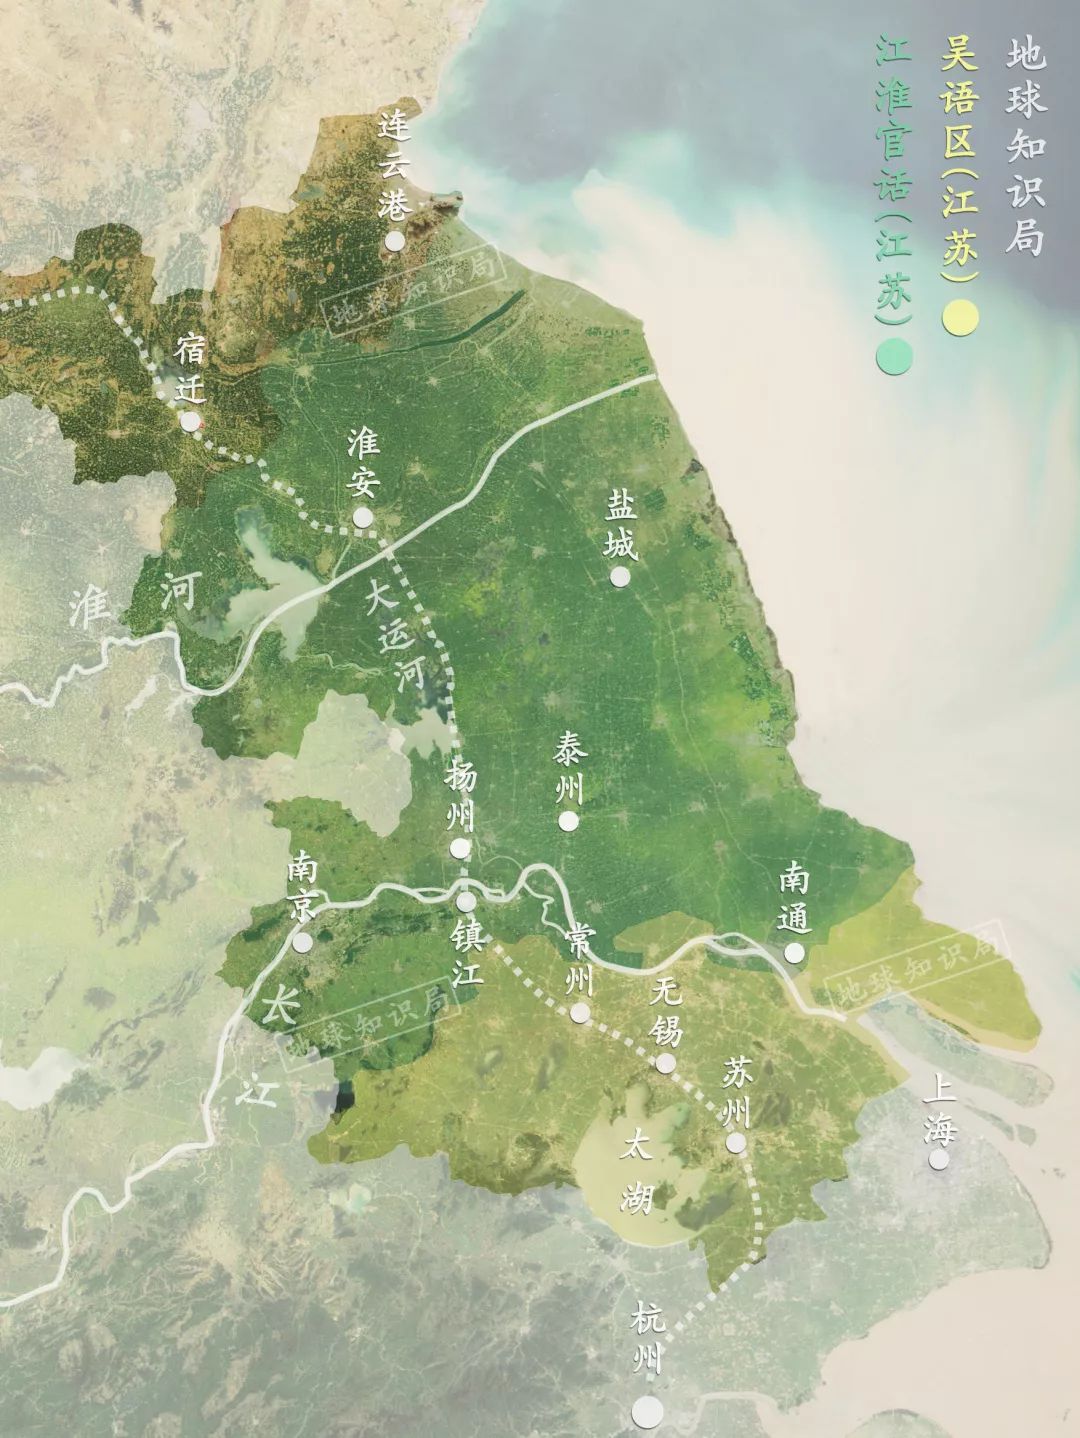 江苏省地形地势地貌图图片